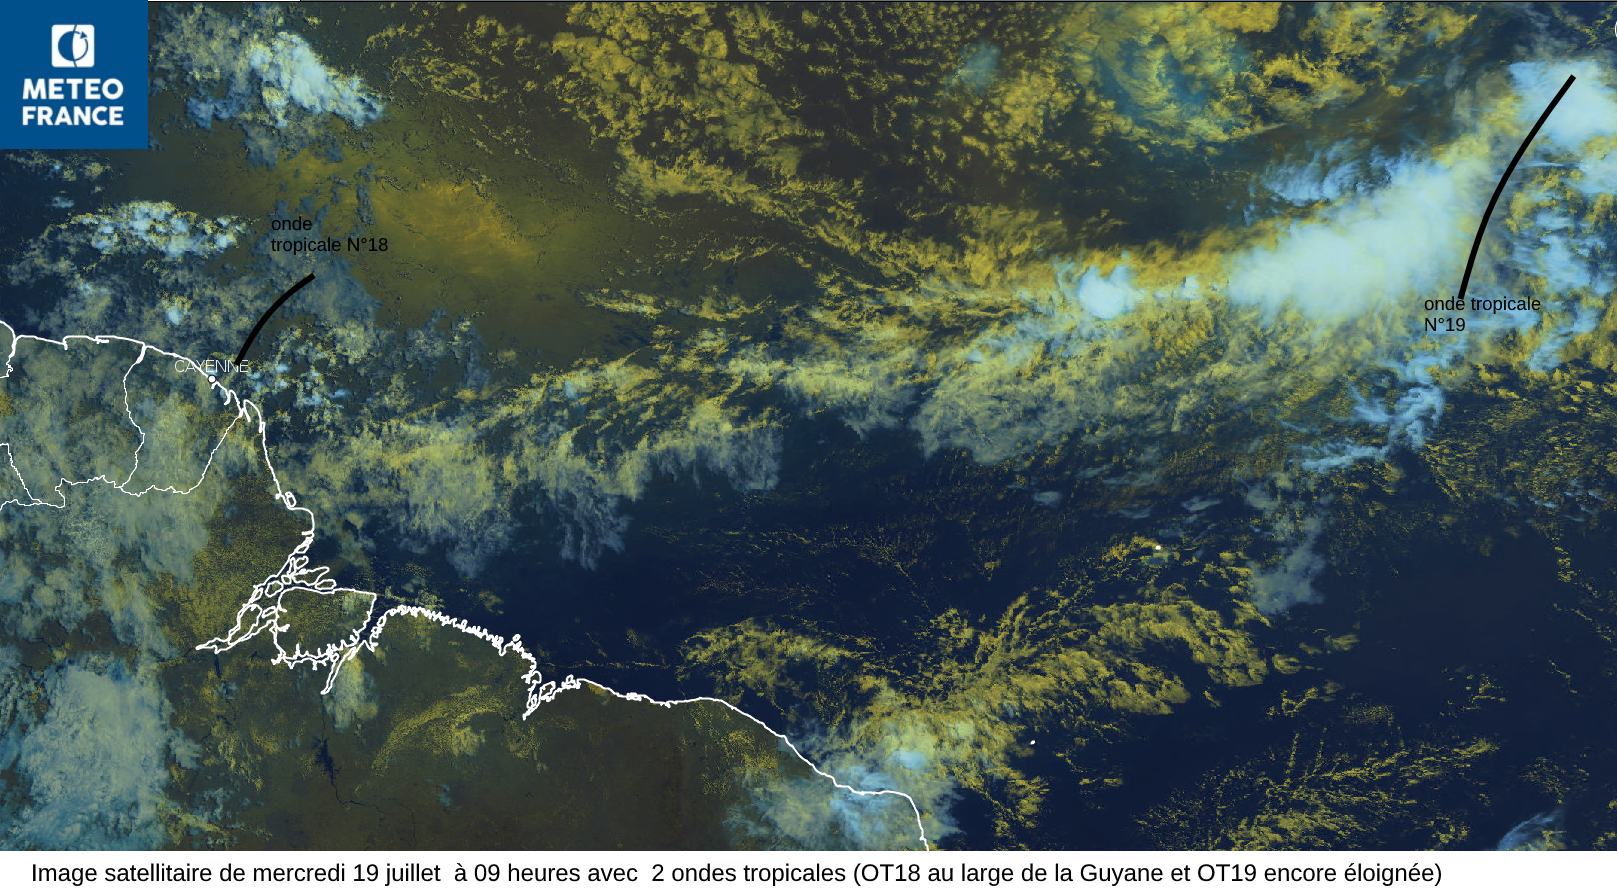 L'image satellitaire de mercredi 19 juillet en matinée avec l'onde tropicale N°18 proche du littoral guyanais